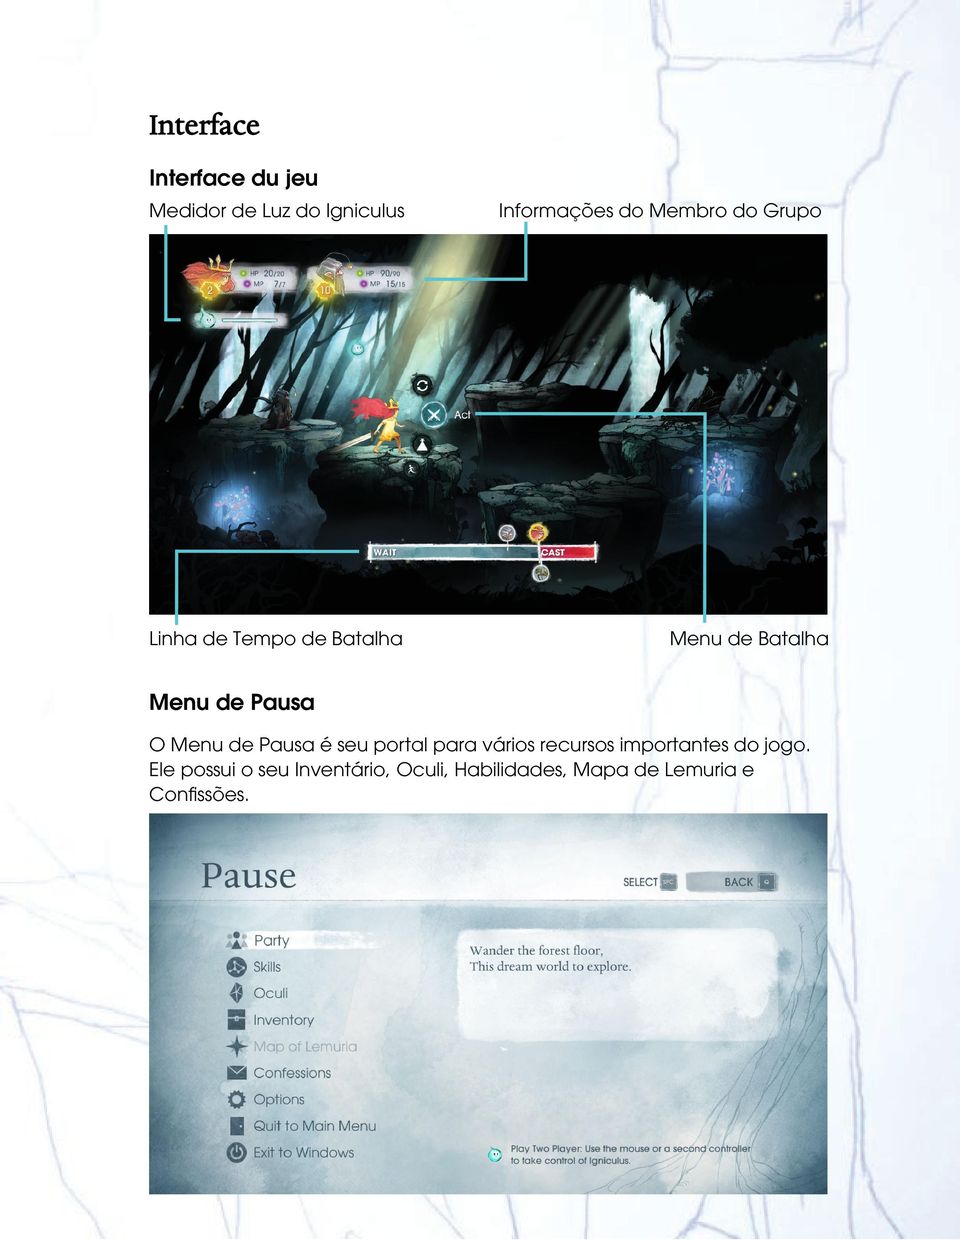 O Menu de Pausa é seu portal para vários recursos importantes do jogo.